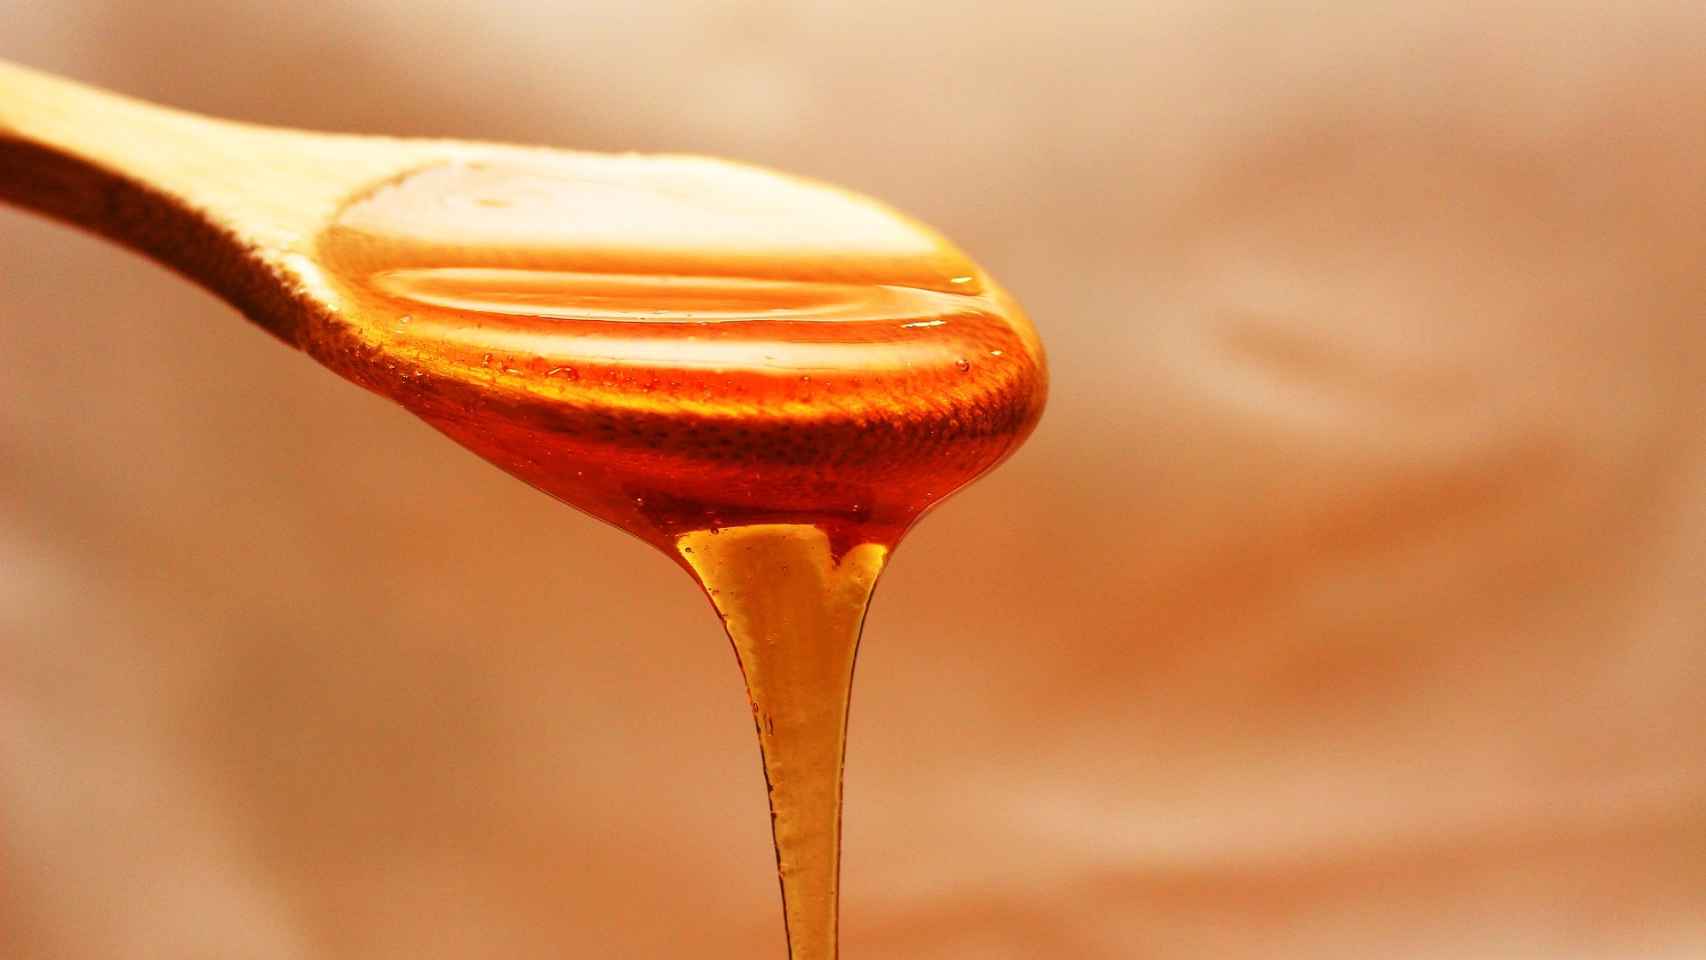 La miel escurriéndose a través de una cuchara.